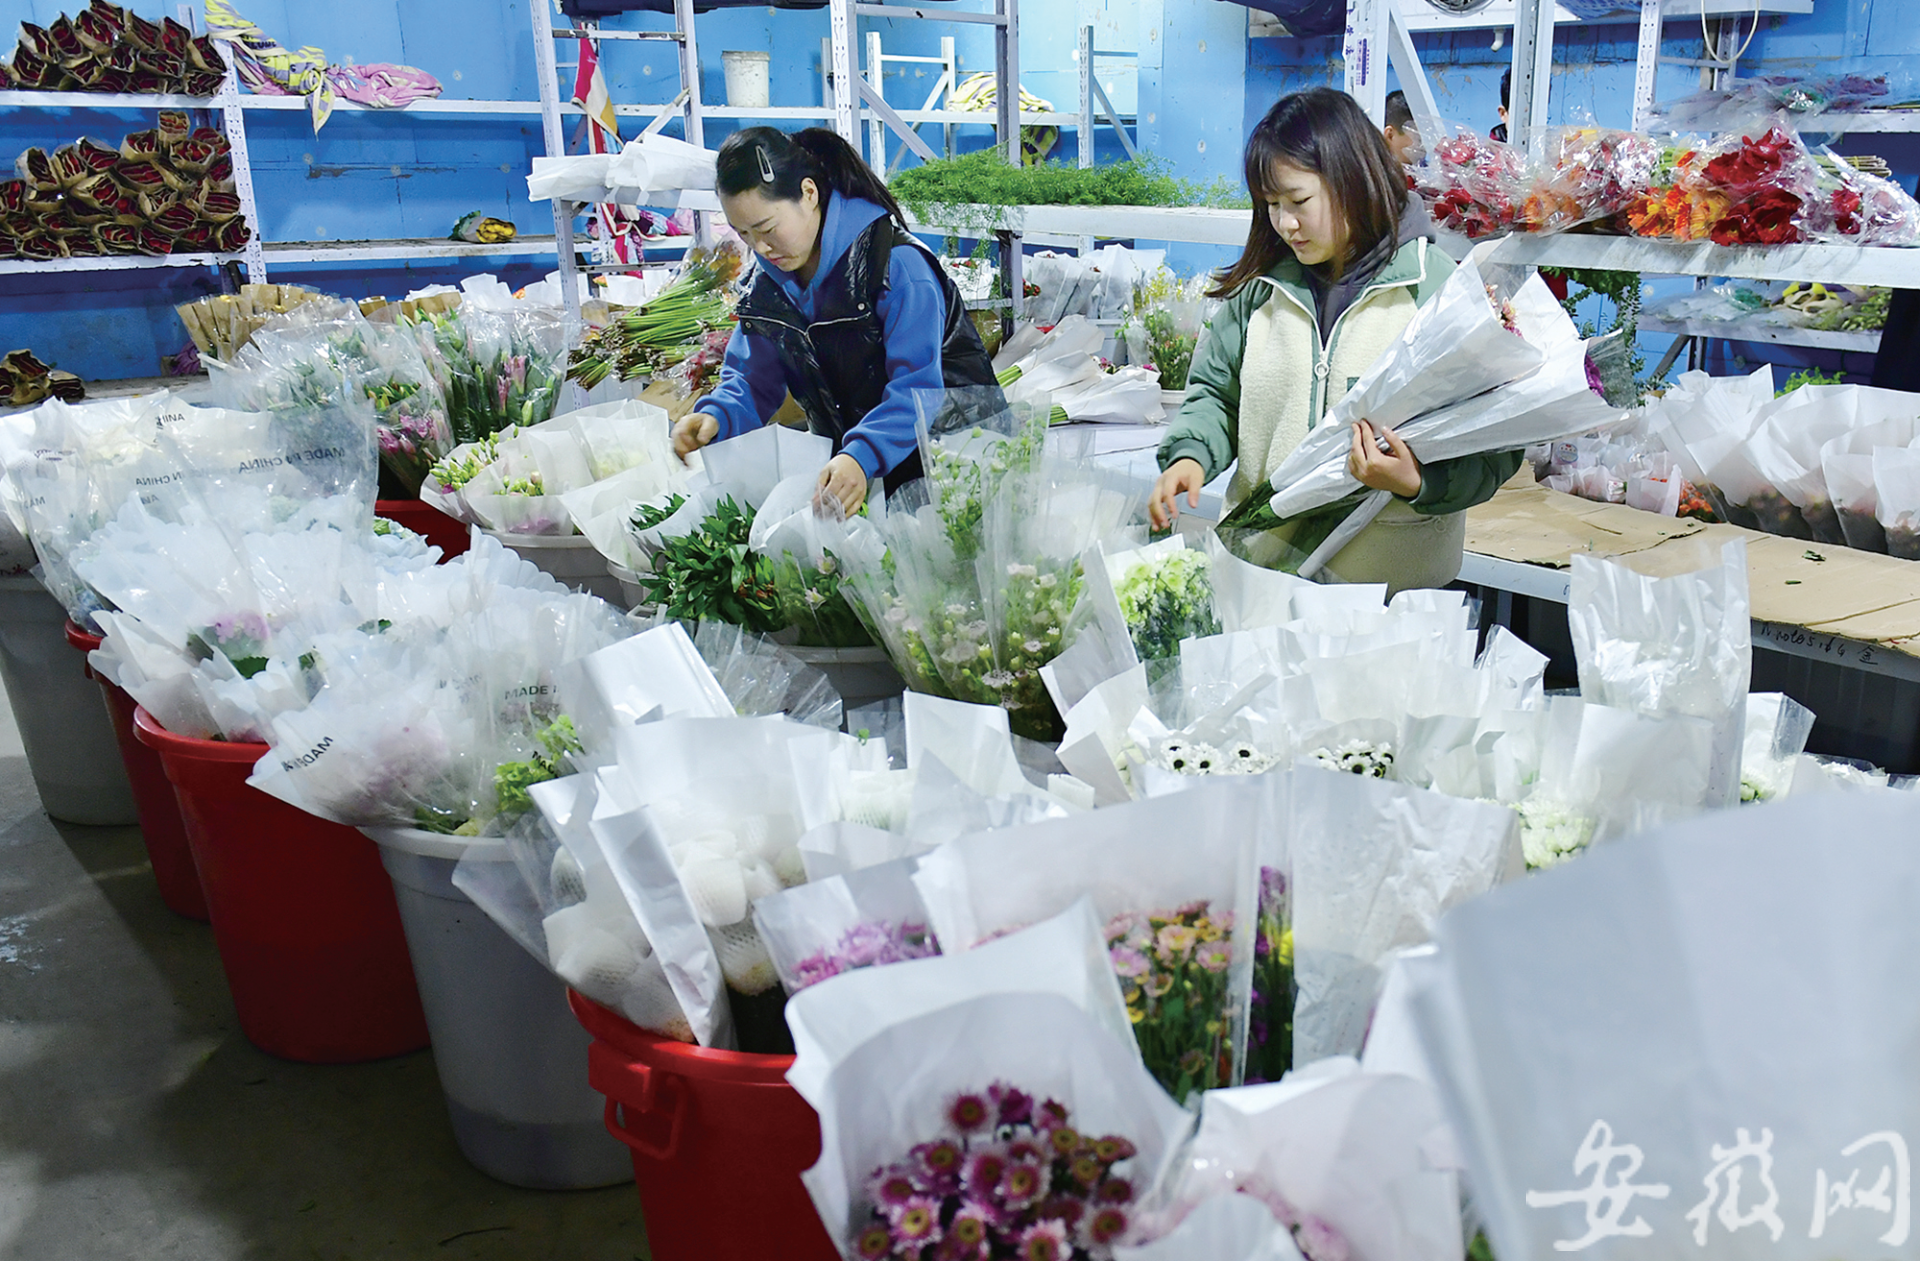 阜阳当地仓库里准备销往全国的鲜花。